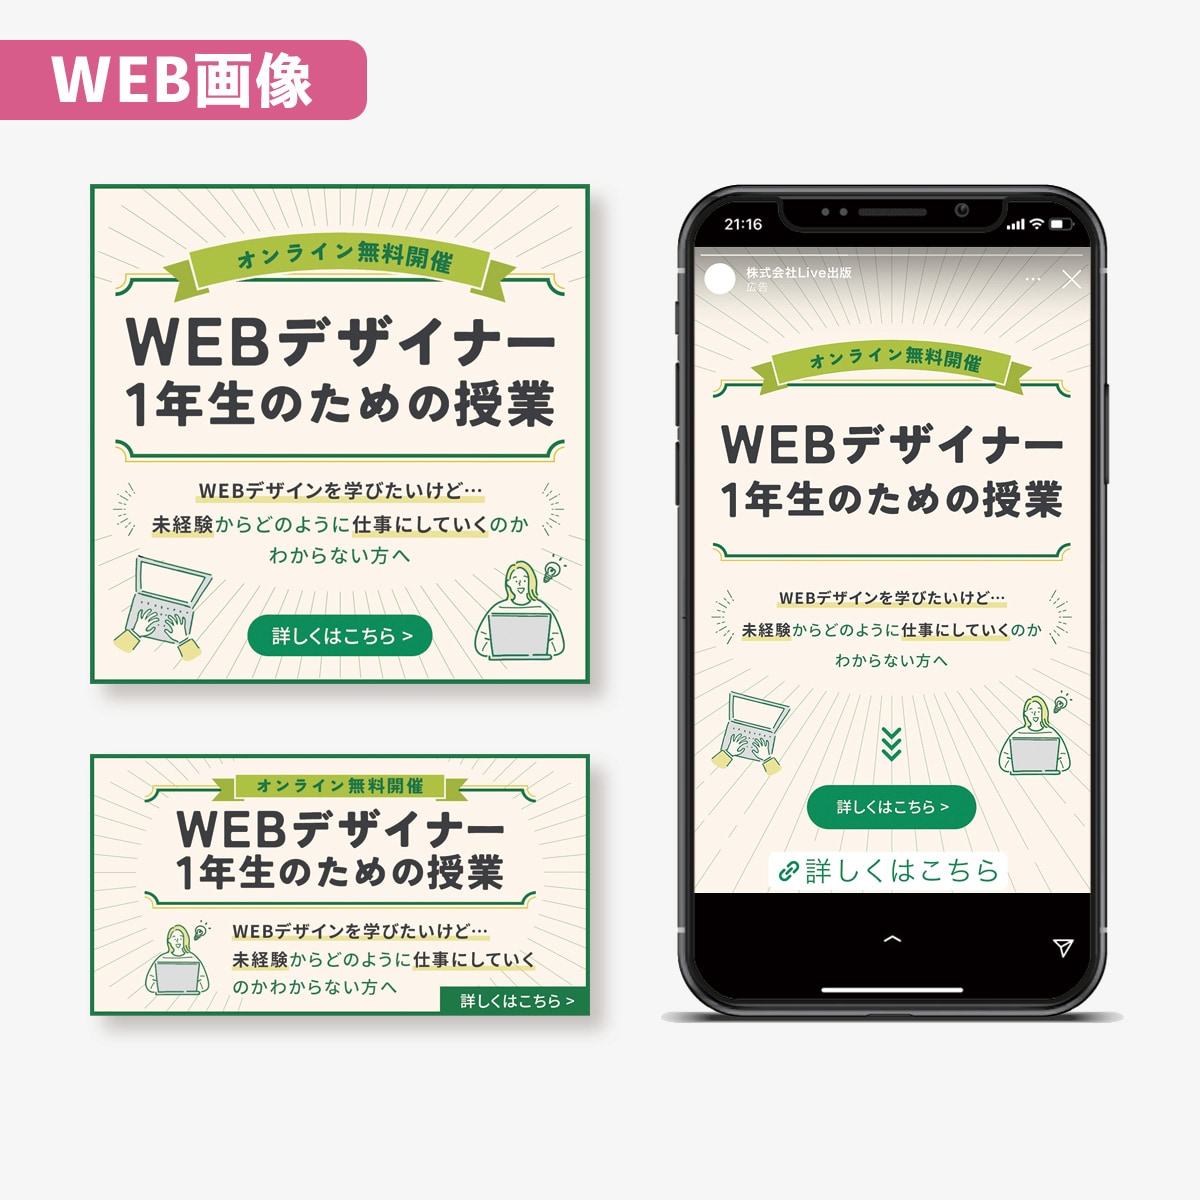 WEBデザインセミナーの広告画像